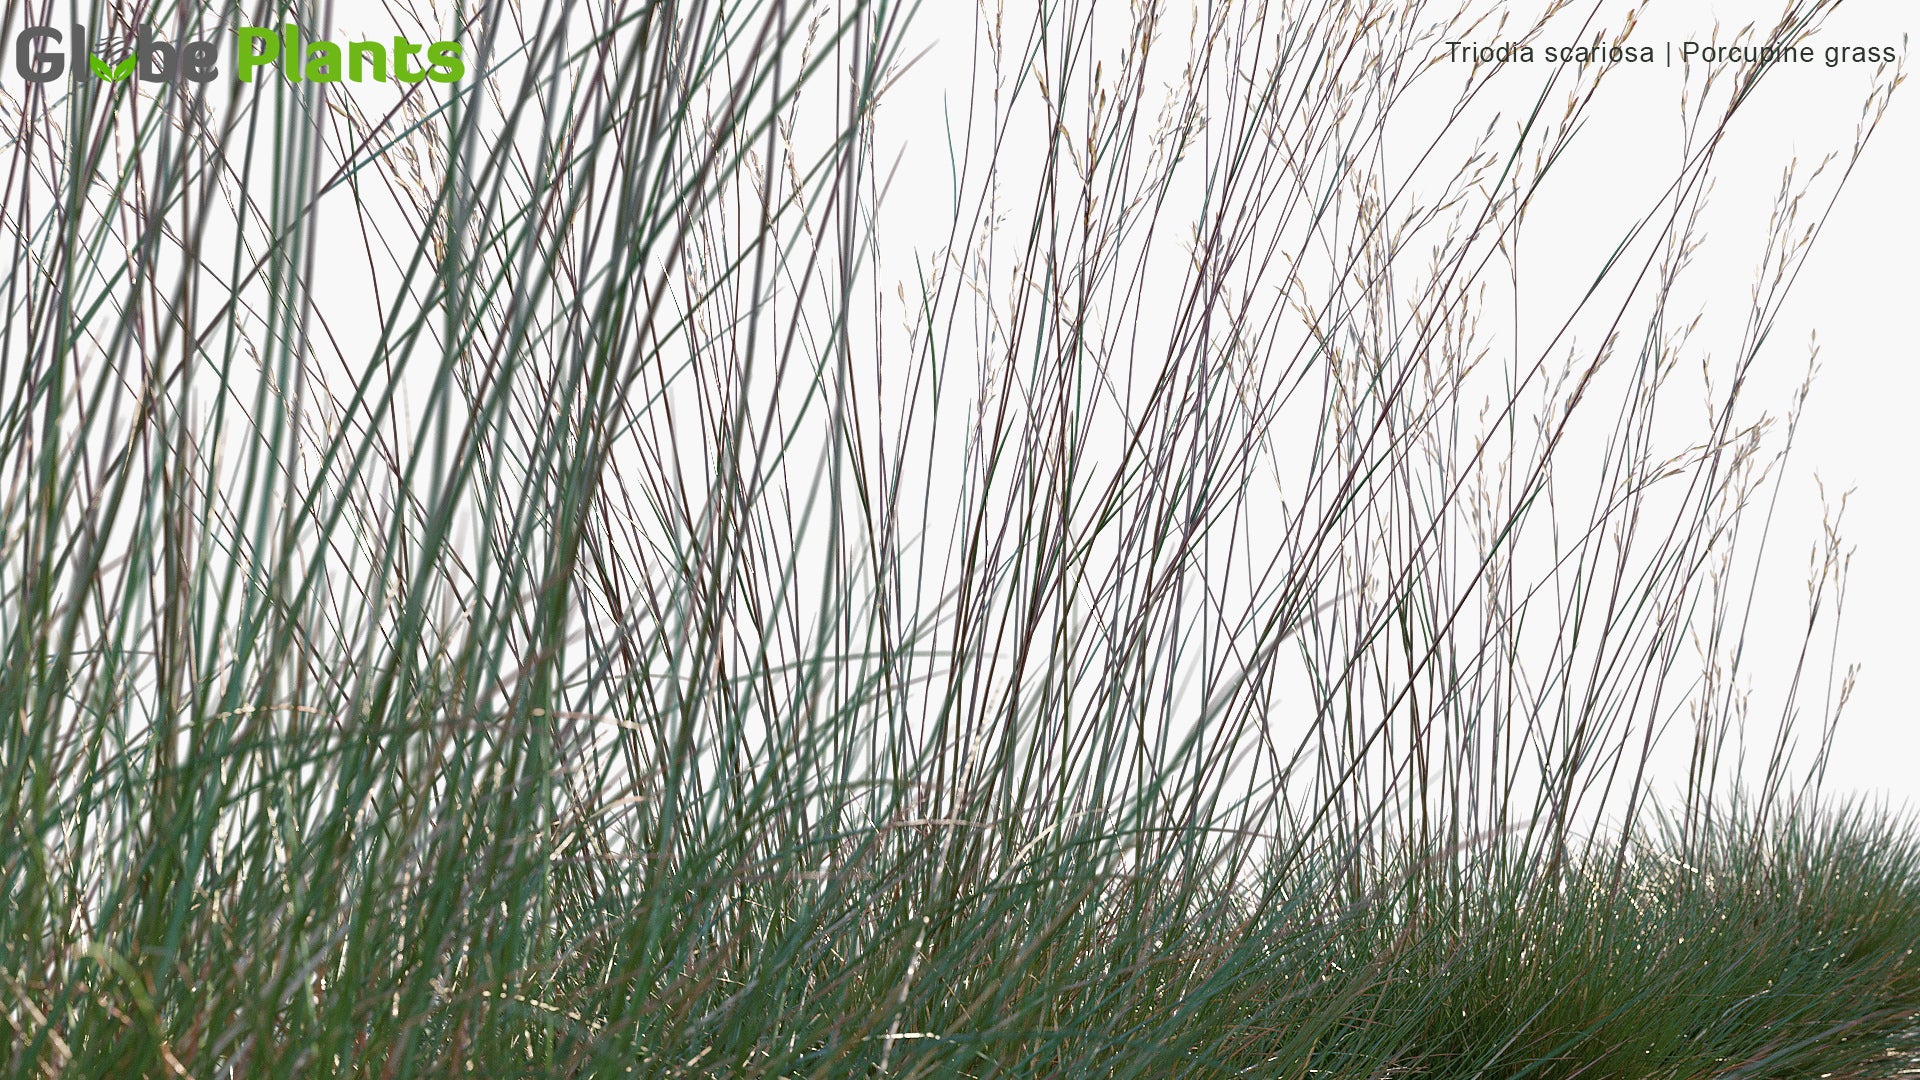 Triodia Scariosa - Porcupine Grass